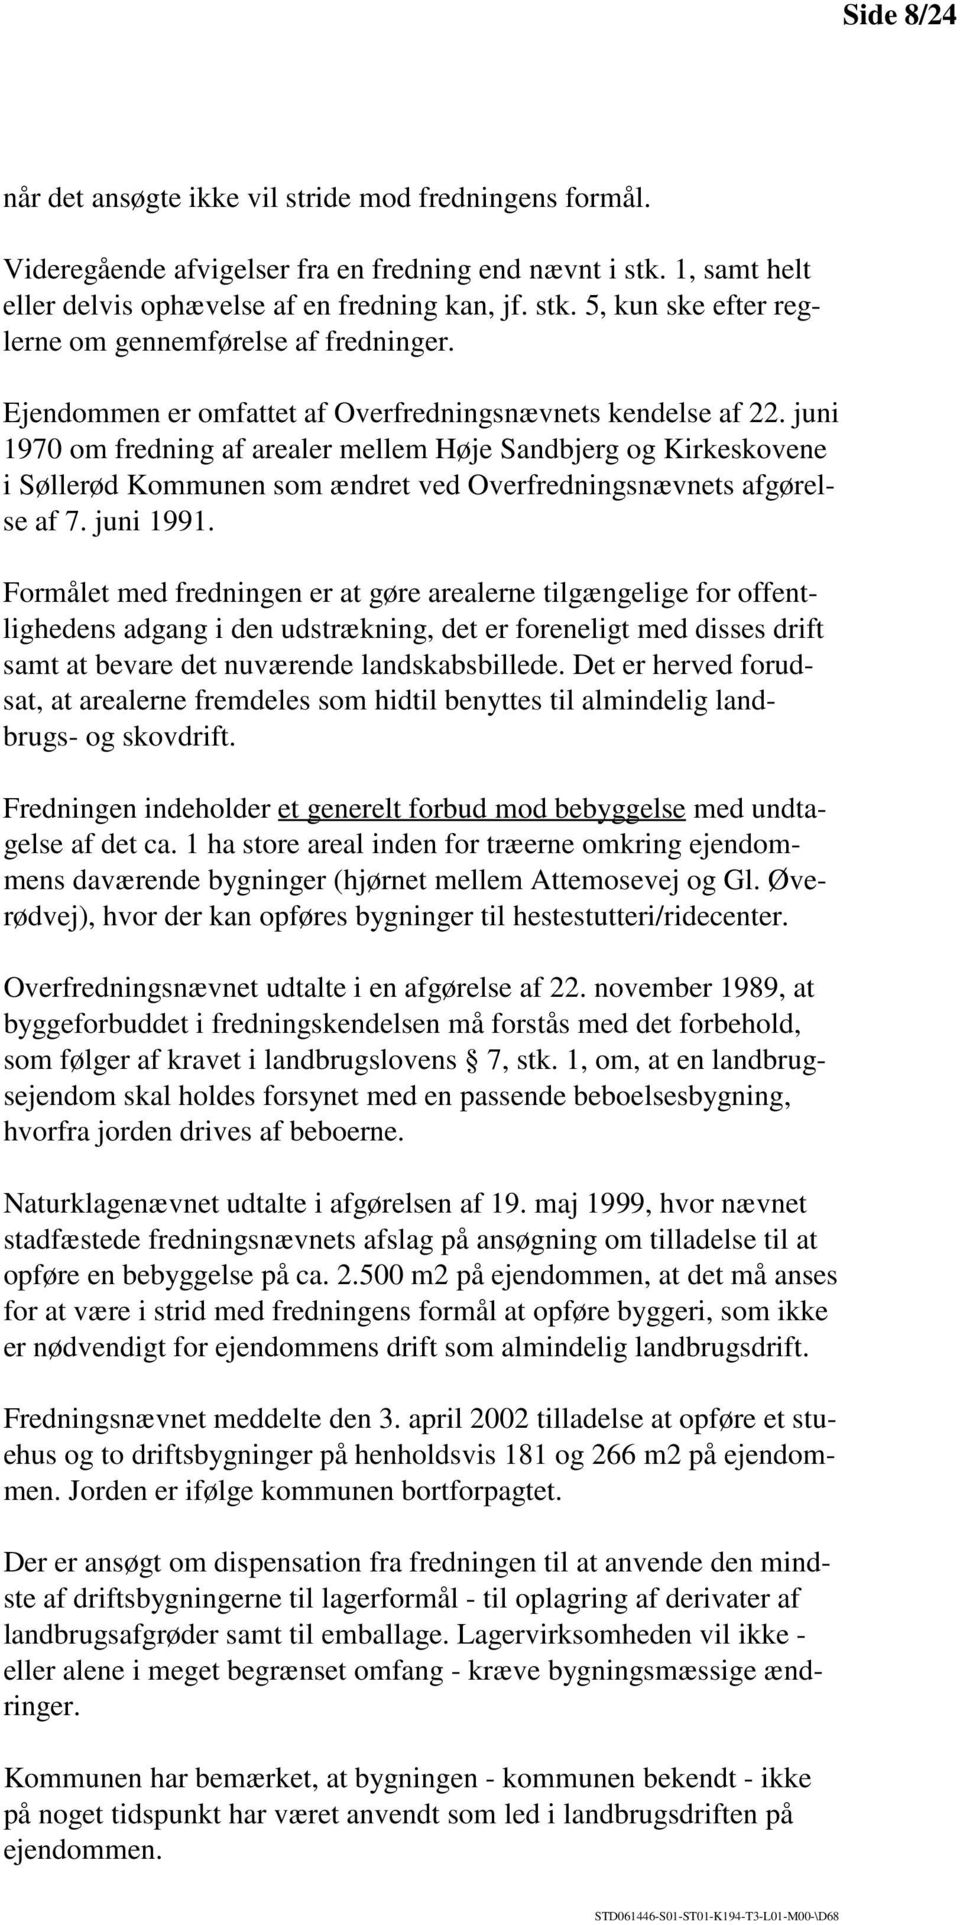 juni 1970 om fredning af arealer mellem Høje Sandbjerg og Kirkeskovene i Søllerød Kommunen som ændret ved Overfredningsnævnets afgørelse af 7. juni 1991.